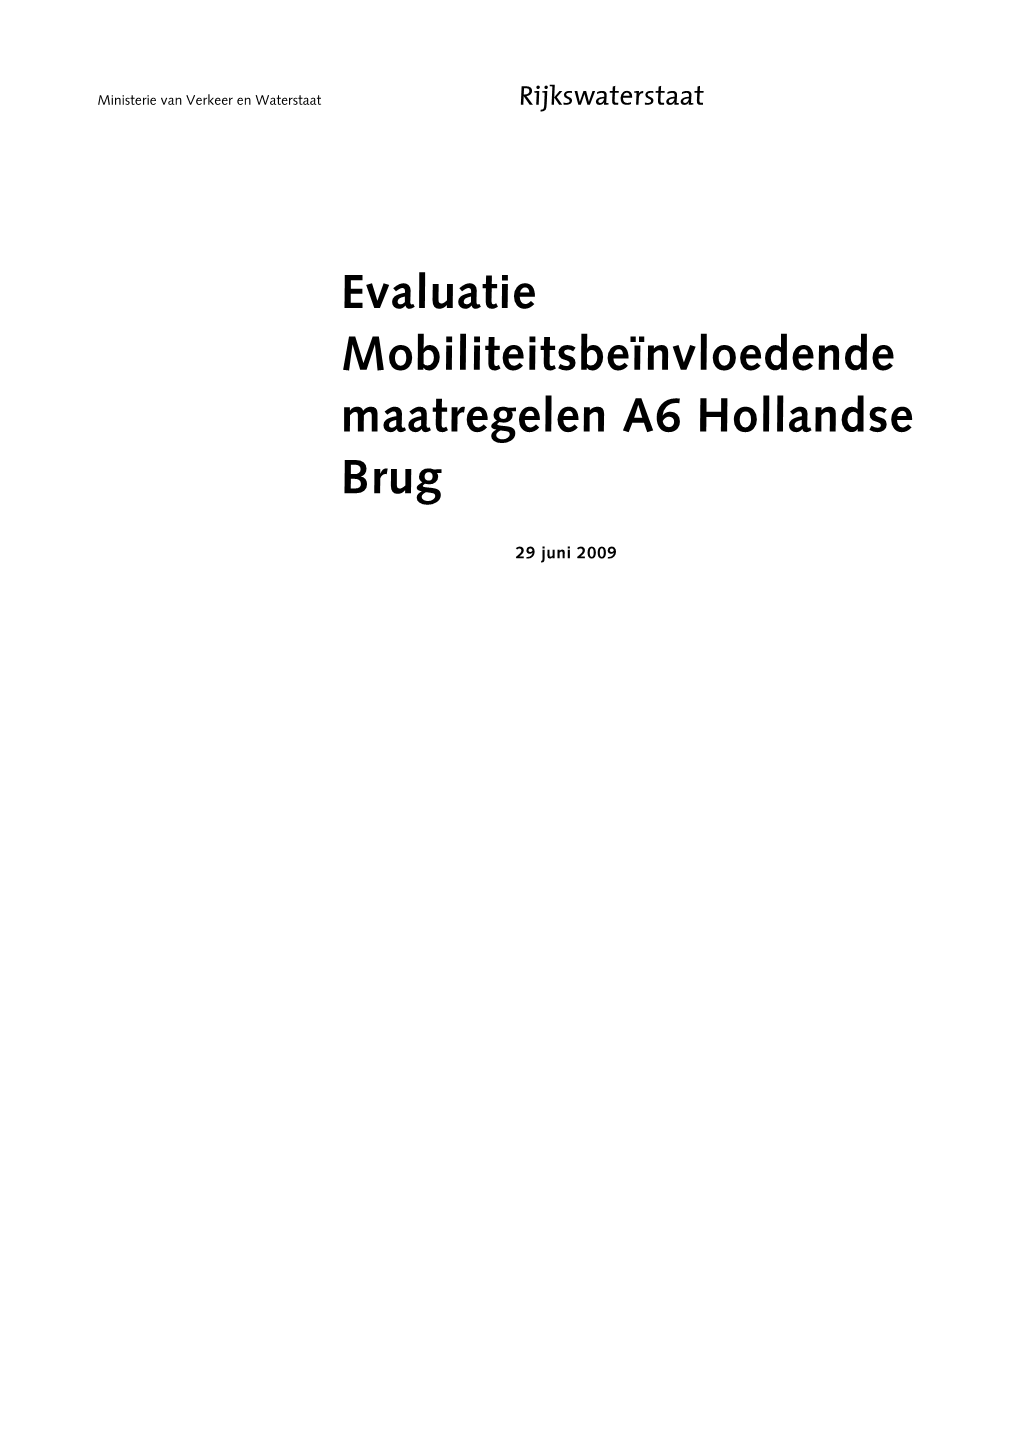 Evaluatie A6 Hollandse Brug Hoofdrapport